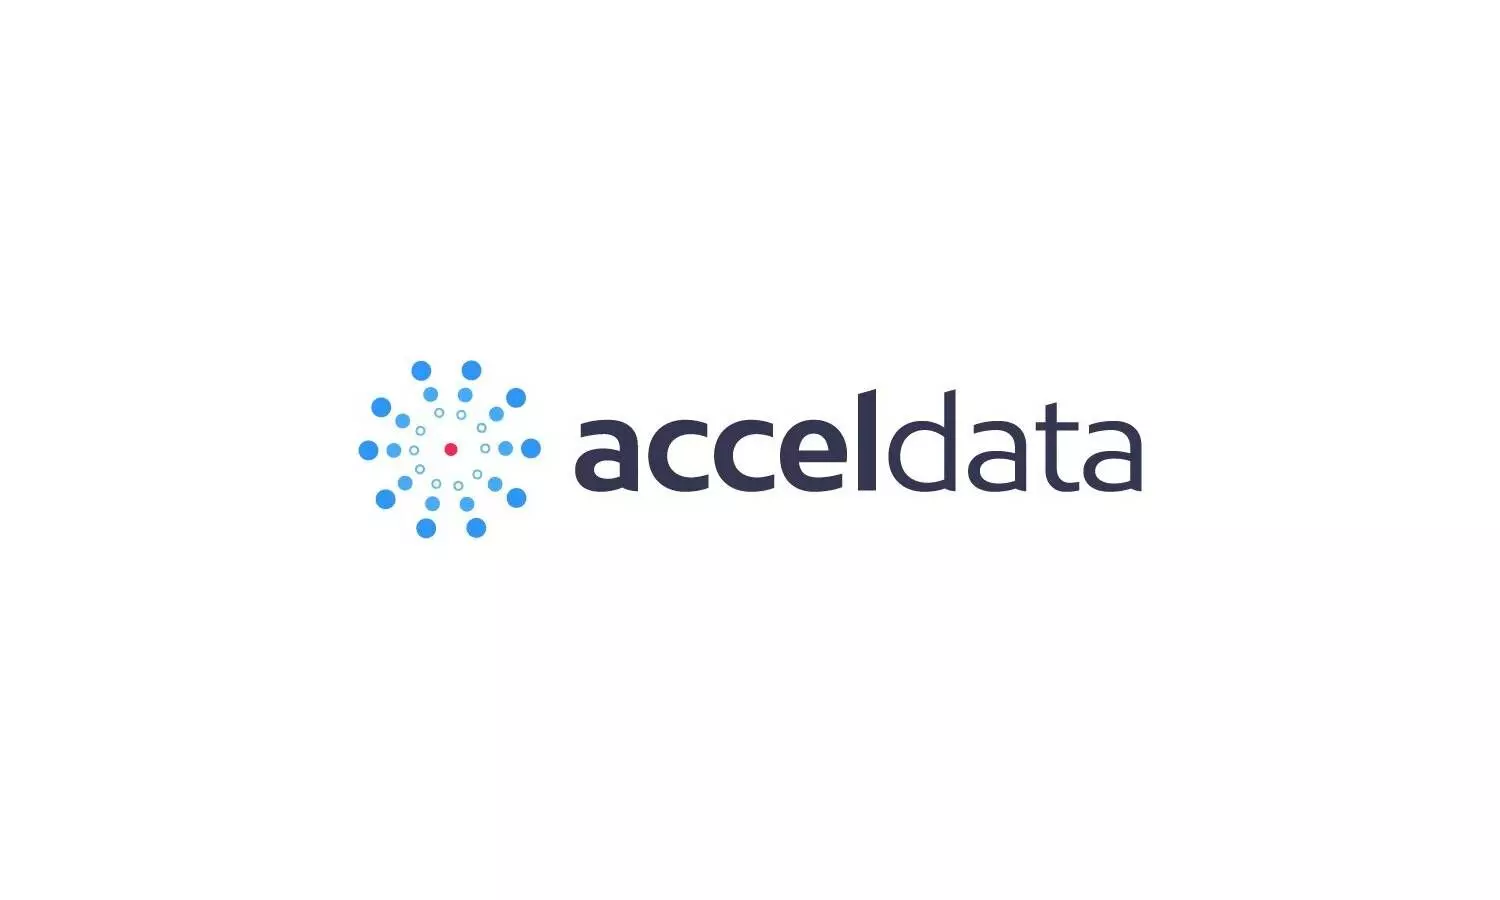 Acceldata raises $35M to deliver Enterprise Data Observability Cloud